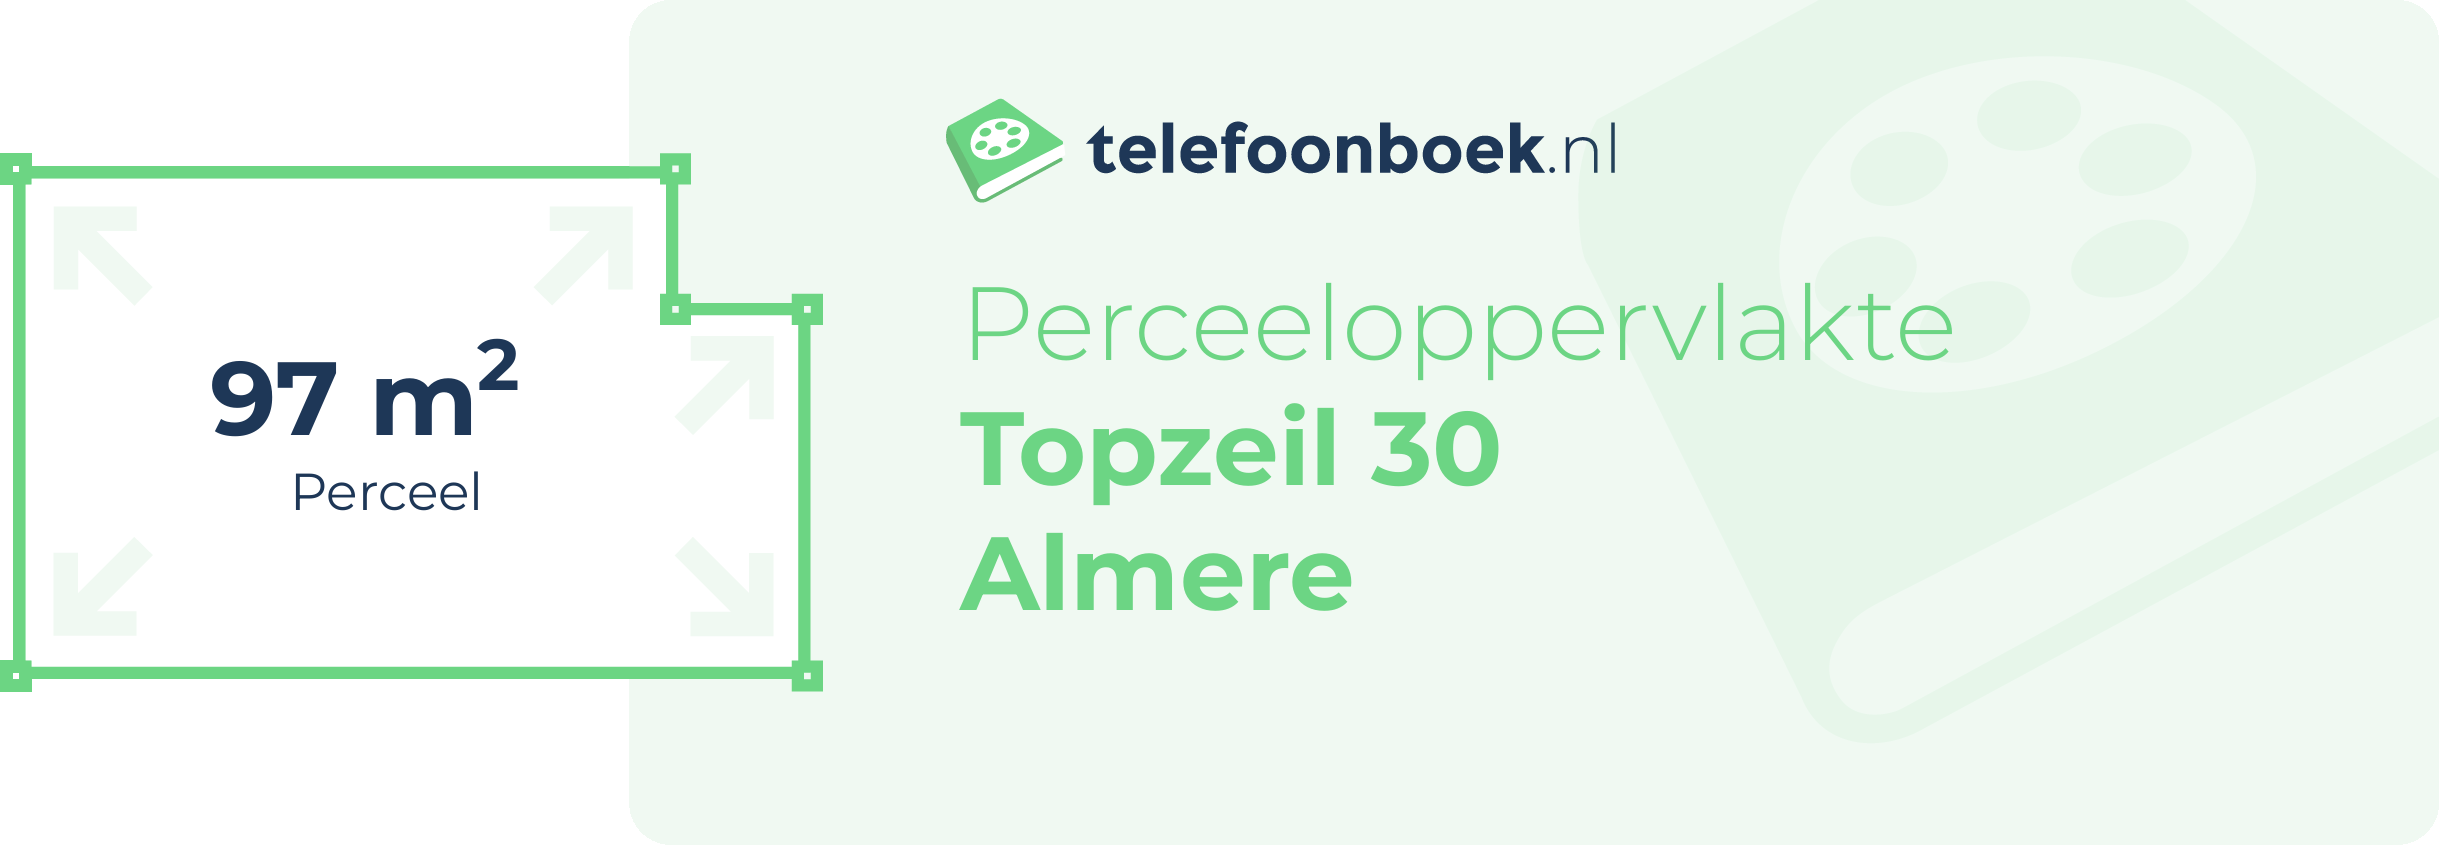 Perceeloppervlakte Topzeil 30 Almere